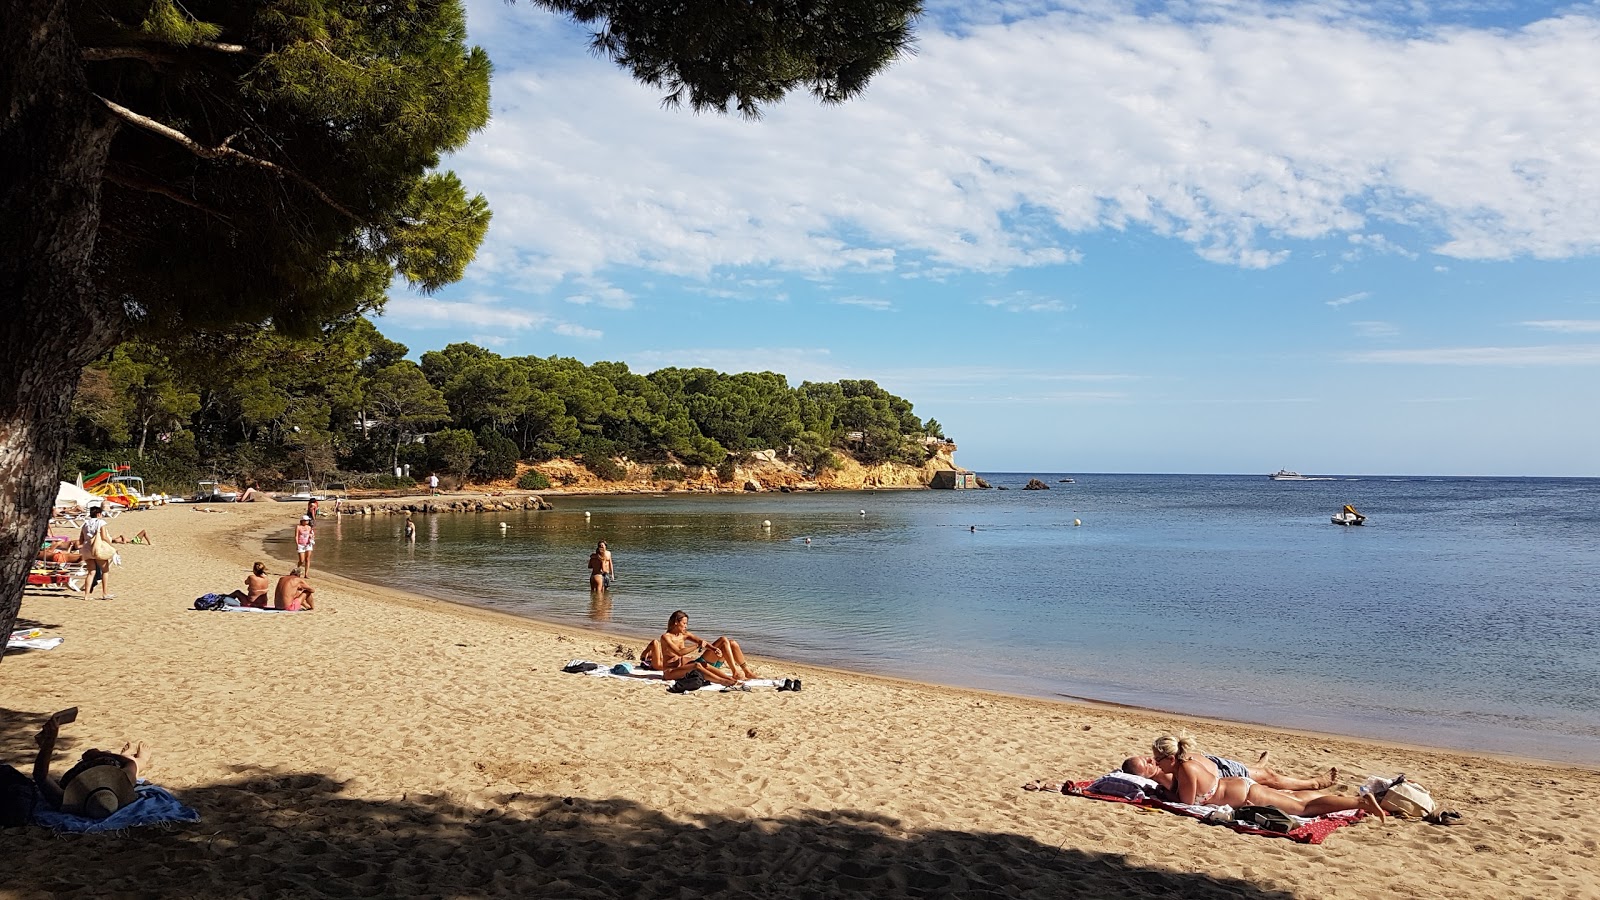 Foto de Playa Niu Blau - lugar popular entre los conocedores del relax